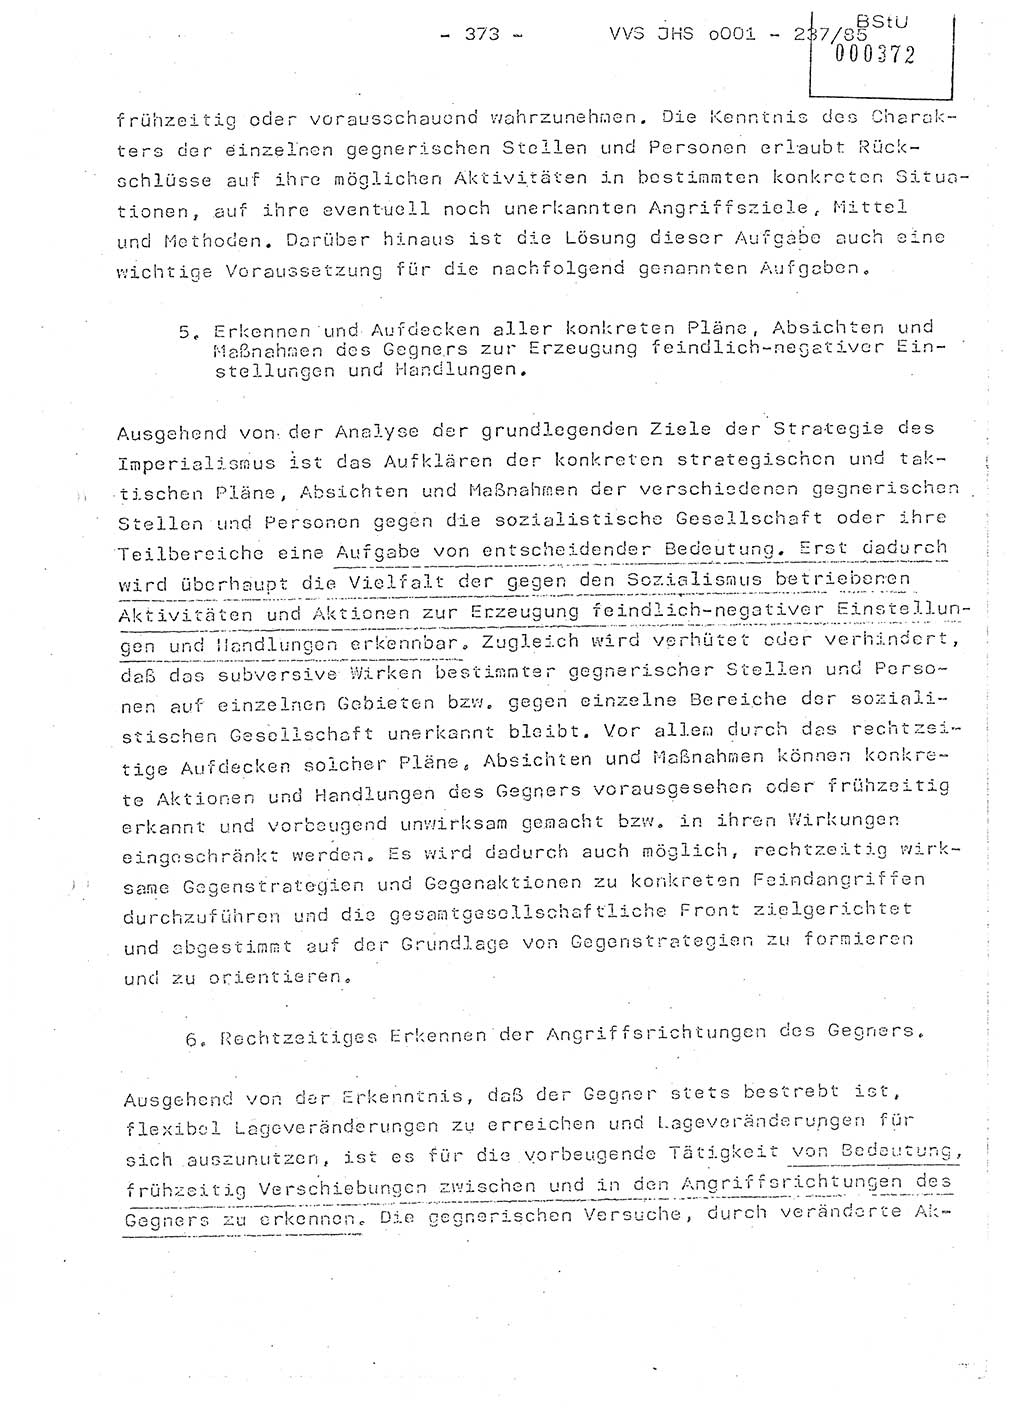 Dissertation Oberstleutnant Peter Jakulski (JHS), Oberstleutnat Christian Rudolph (HA Ⅸ), Major Horst Böttger (ZMD), Major Wolfgang Grüneberg (JHS), Major Albert Meutsch (JHS), Ministerium für Staatssicherheit (MfS) [Deutsche Demokratische Republik (DDR)], Juristische Hochschule (JHS), Vertrauliche Verschlußsache (VVS) o001-237/85, Potsdam 1985, Seite 373 (Diss. MfS DDR JHS VVS o001-237/85 1985, S. 373)